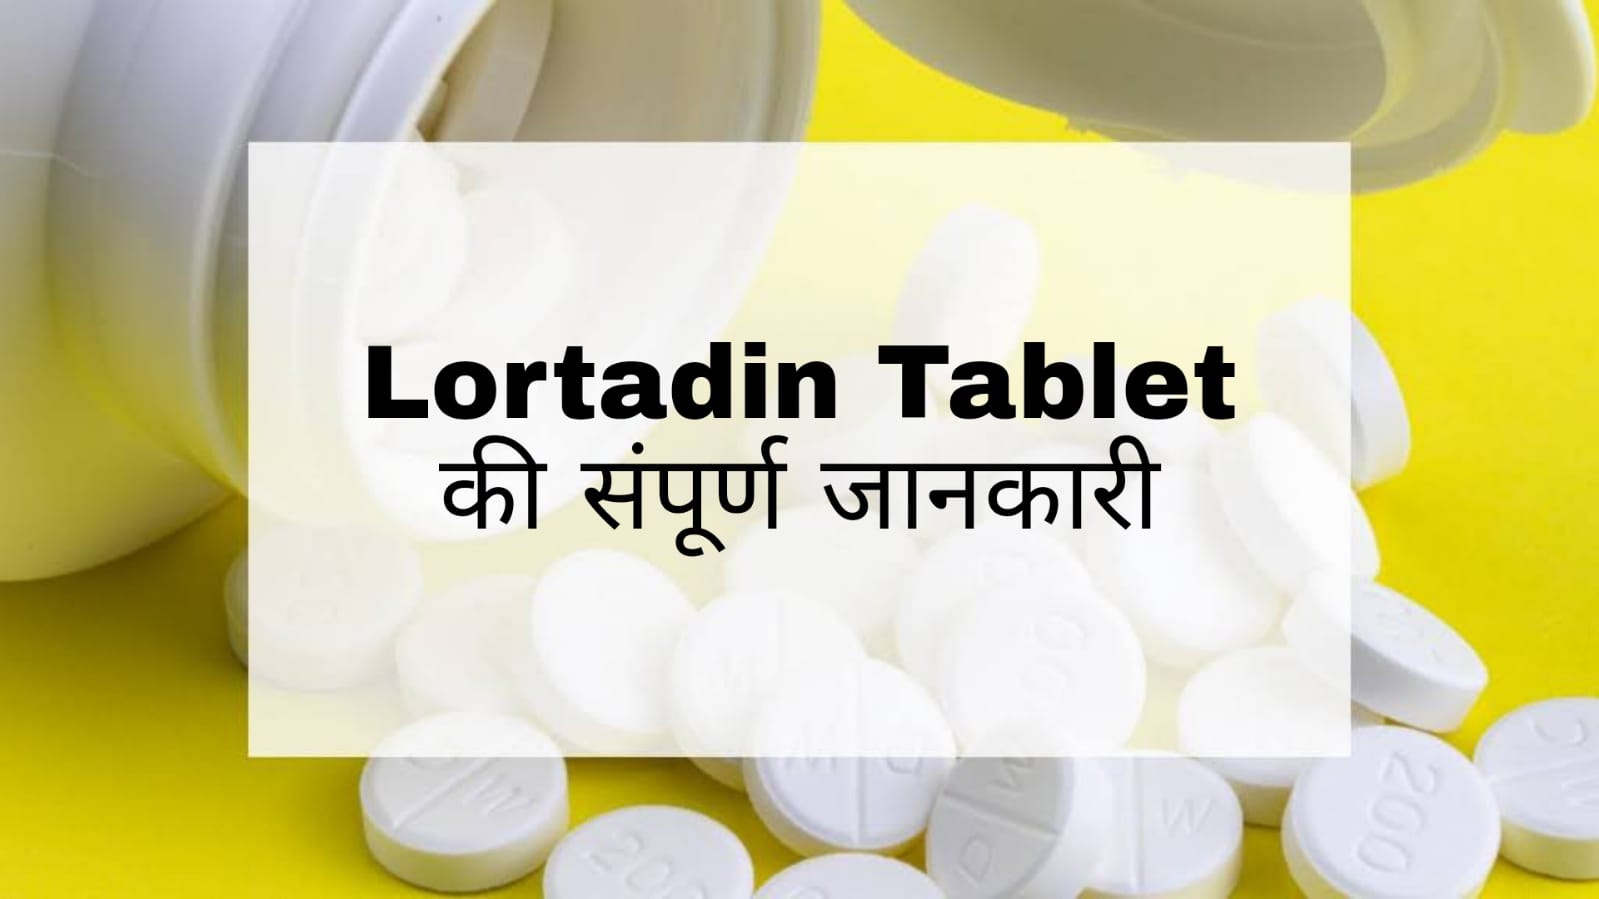 Lortadin Tablet in Hindi: उपयोग, दुष्प्रभाव, सावधानियांं